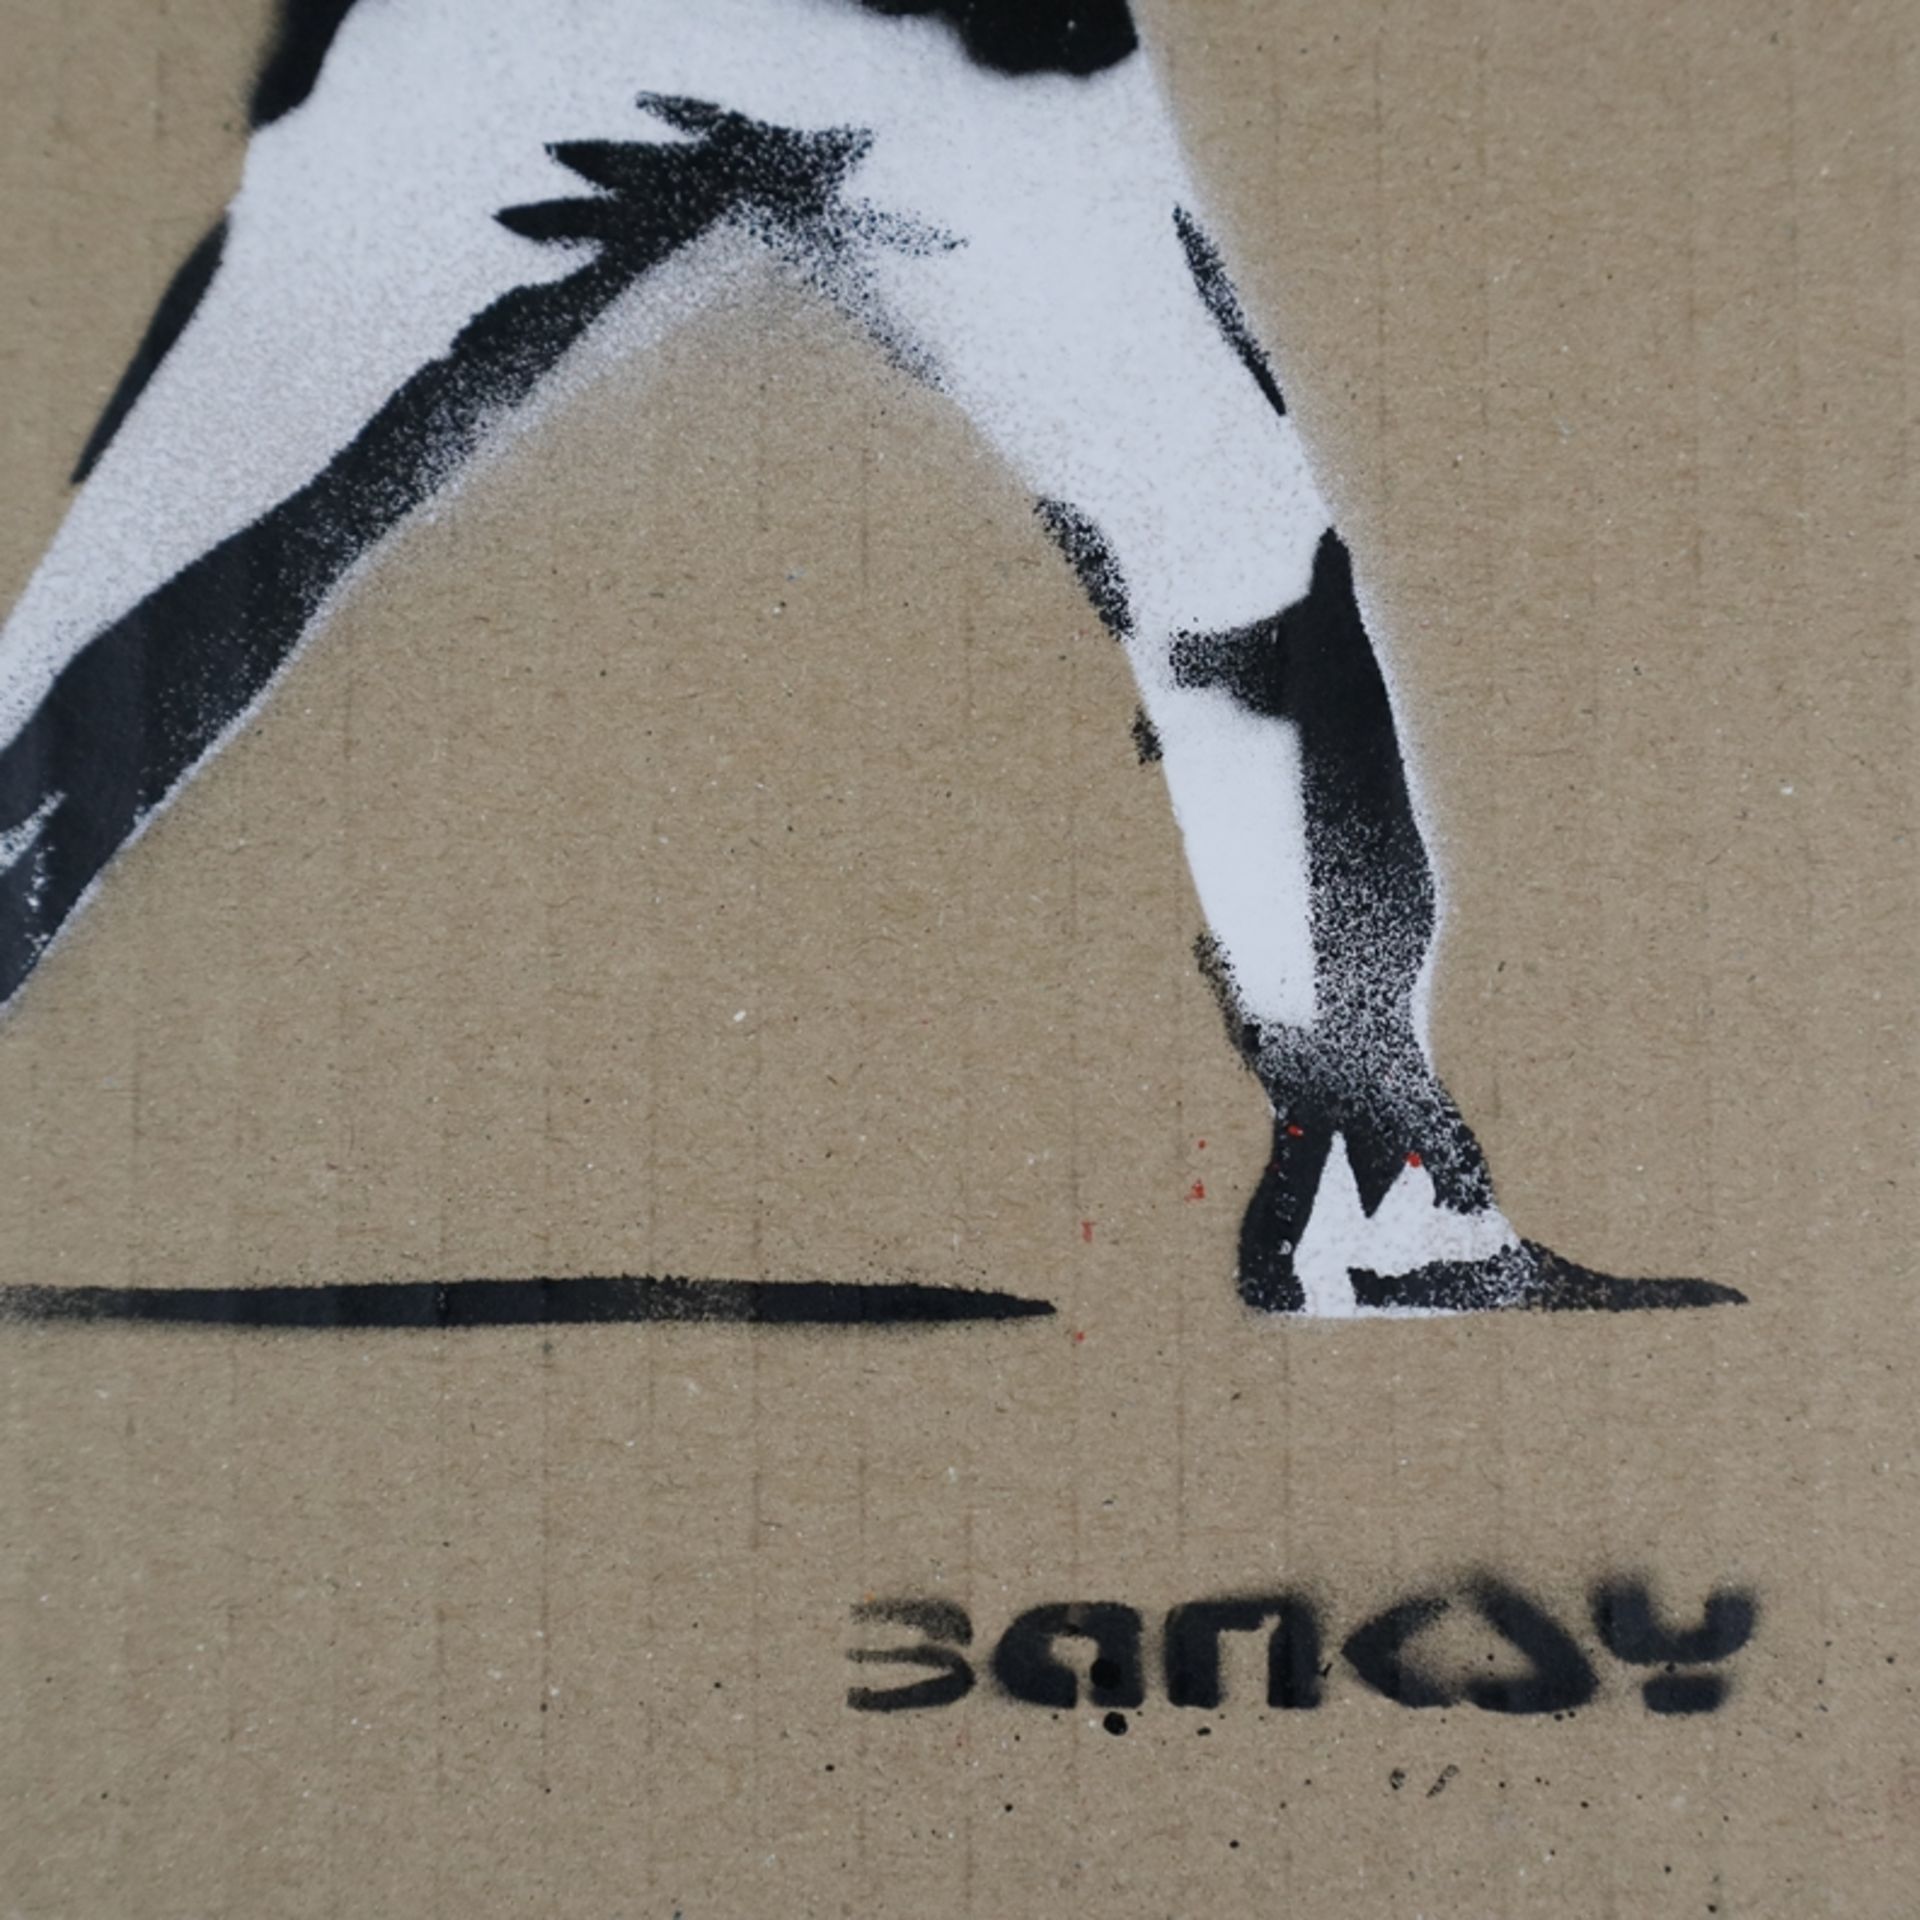 Banksy - "Blumenwerfer", 2015, Souvenir aus der Ausstellung "Dismaland" in Weston-super-Mare in Som - Bild 3 aus 6